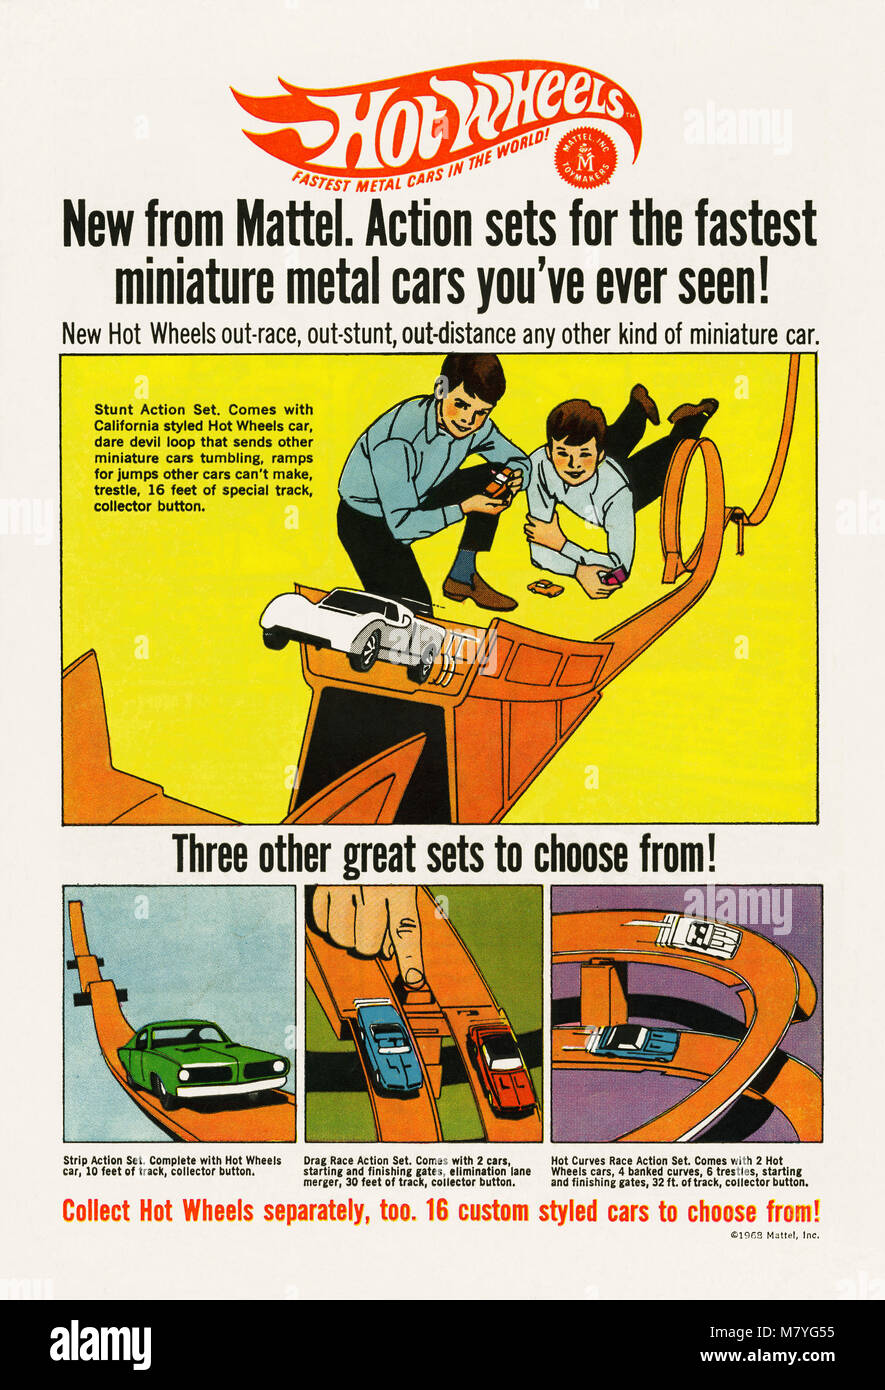 1968 Werbung für Hot Wheels Spielzeugautos. Es erschien im Comic ist eine US-amerikanische Kinder. Hot Wheels ist eine Marke der Druckguss Spielzeugautos von amerikanischen Spielzeughersteller Mattel im gleichen Jahr eingeführt. Stockfoto